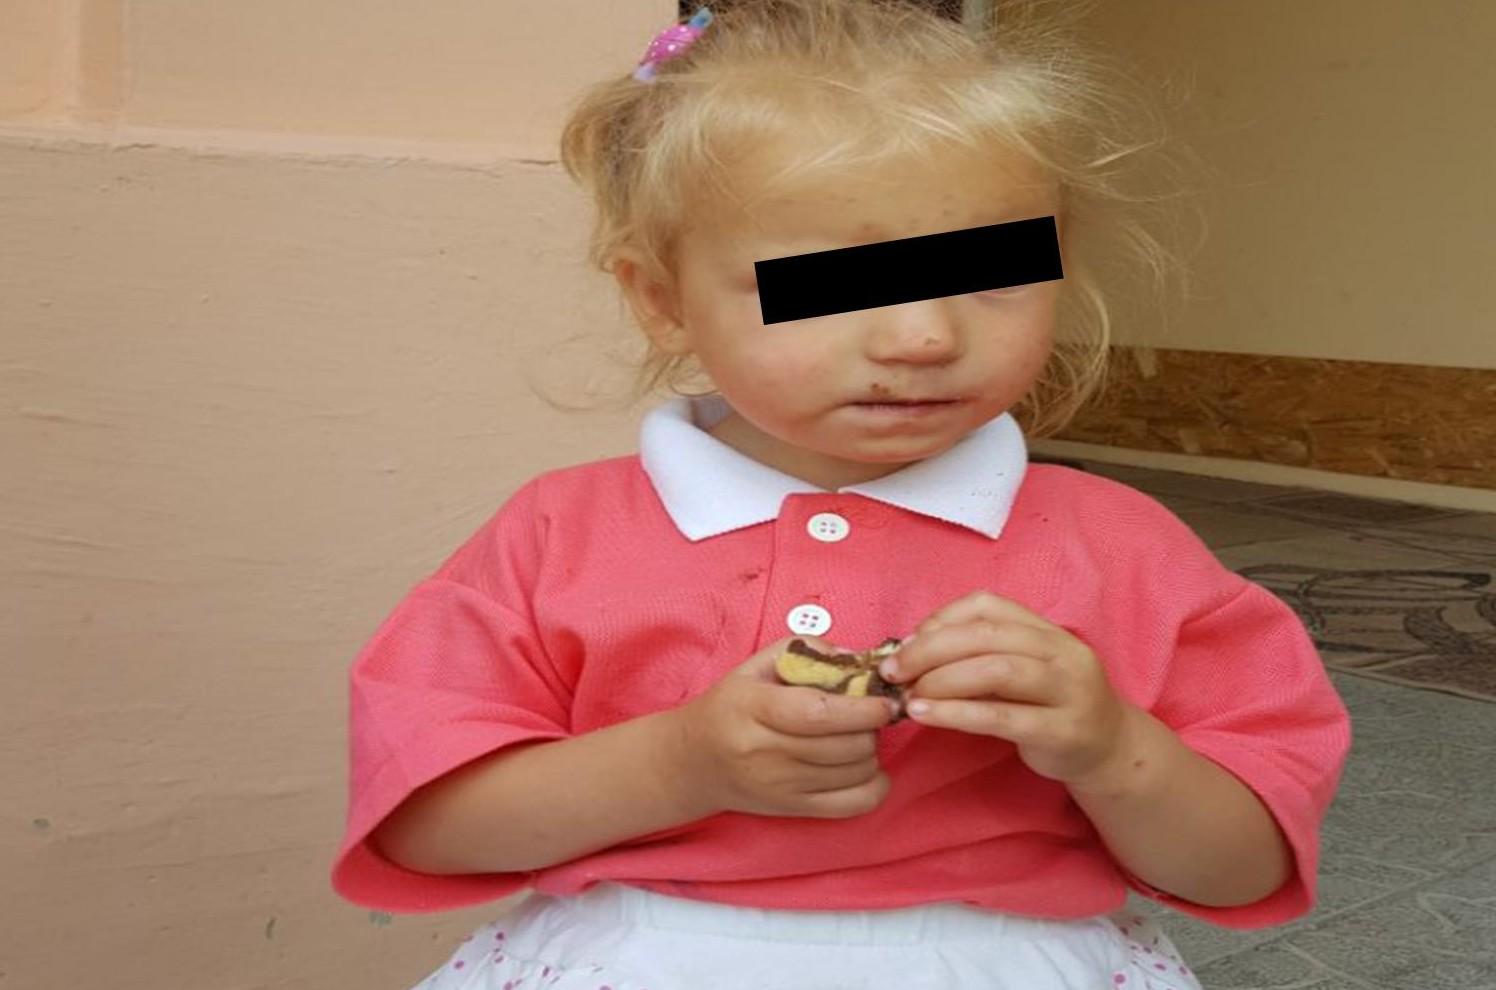 Fetiţă de 2 ani, găsită la Piața Centrală. Poliţia solicită ajutorul oamenilor